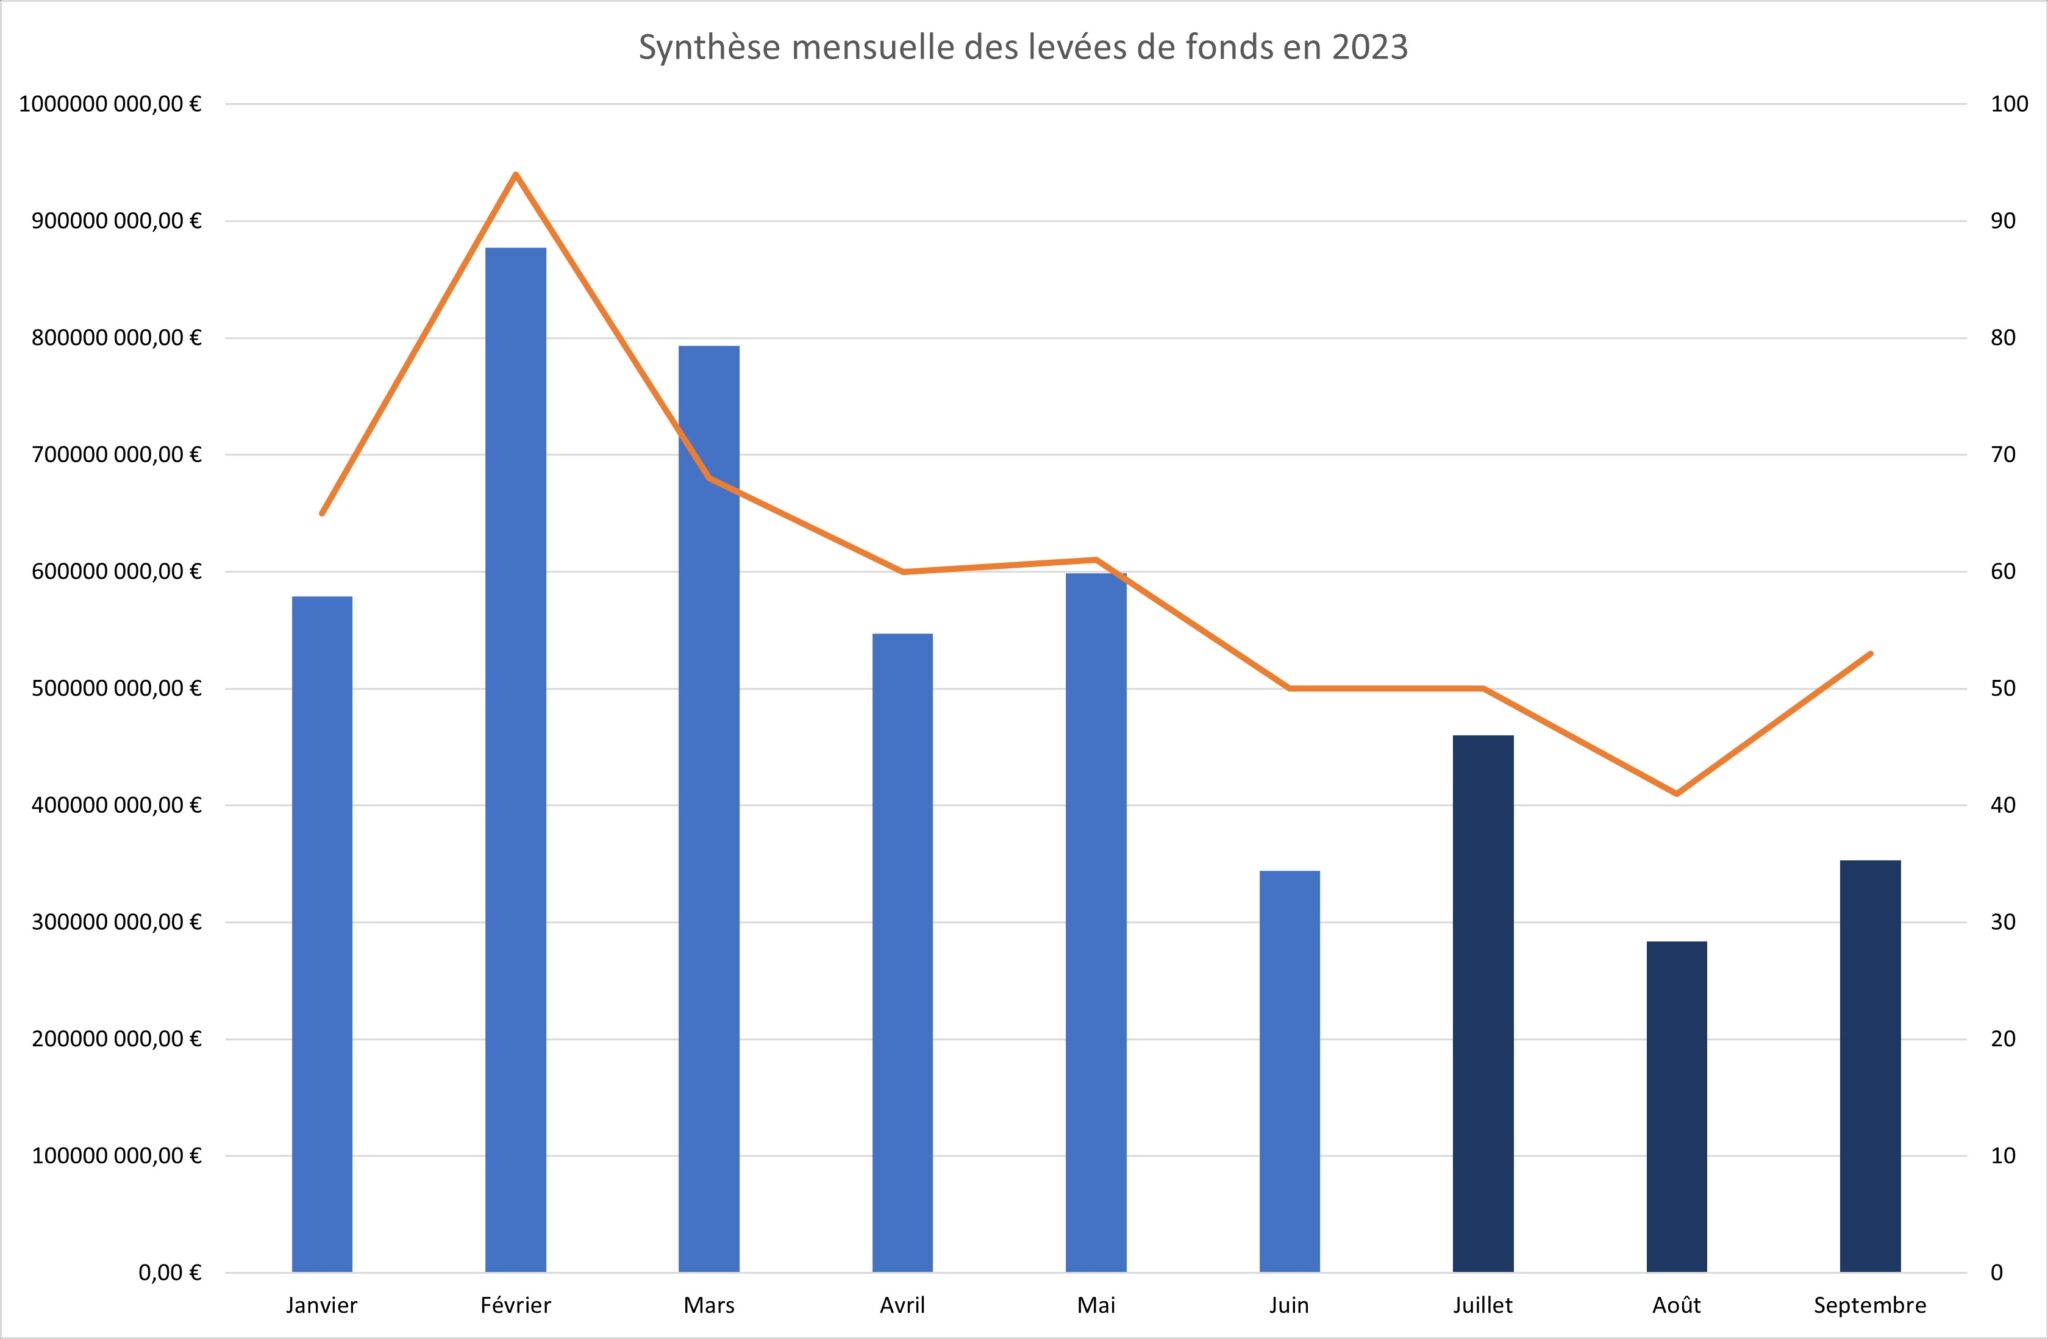 Figuur 2 - Totale maandelijkse fondsenwerving in 2023